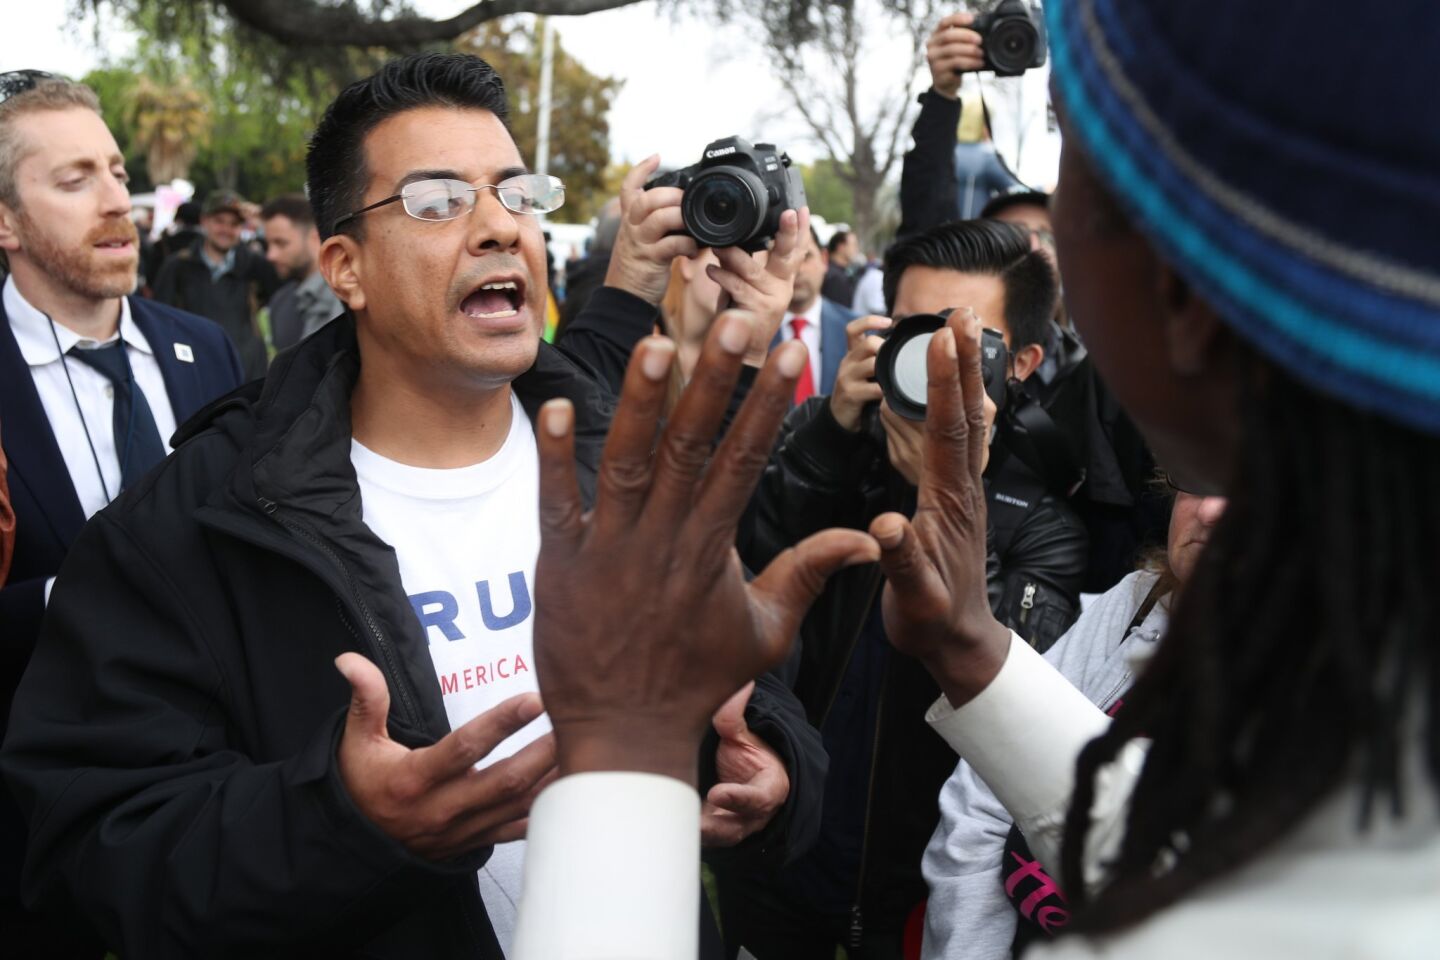 Un seguidor del presidente Donald Trump discute con un manifestante en Beverly Hills. La protesta se dio en forma pacífica y, aunque algunos seguidores del mandatario quisieron confrontar a los manifestantes, el enfrentamiento solo se dio verbalmente.